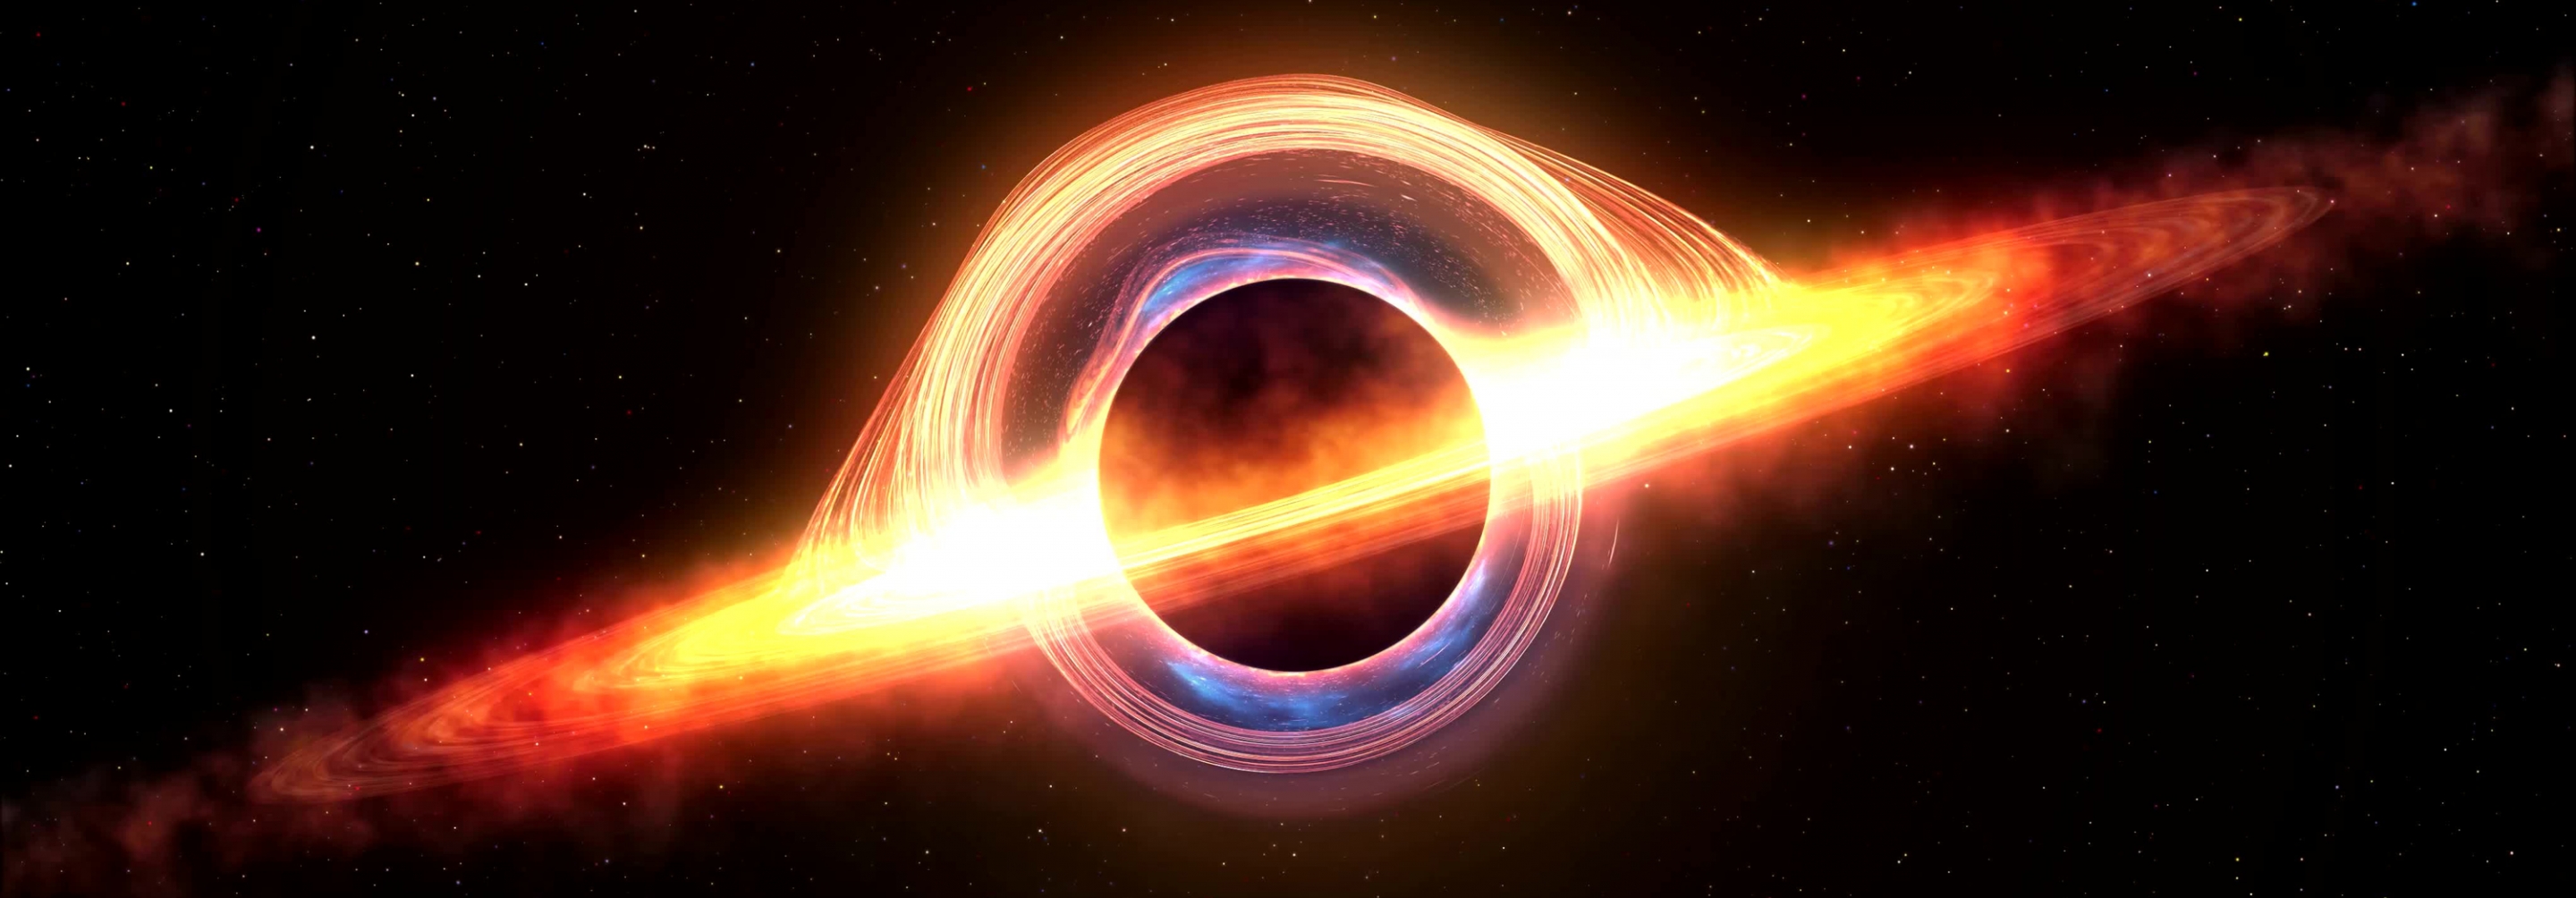 Black hole image with light surrounding it